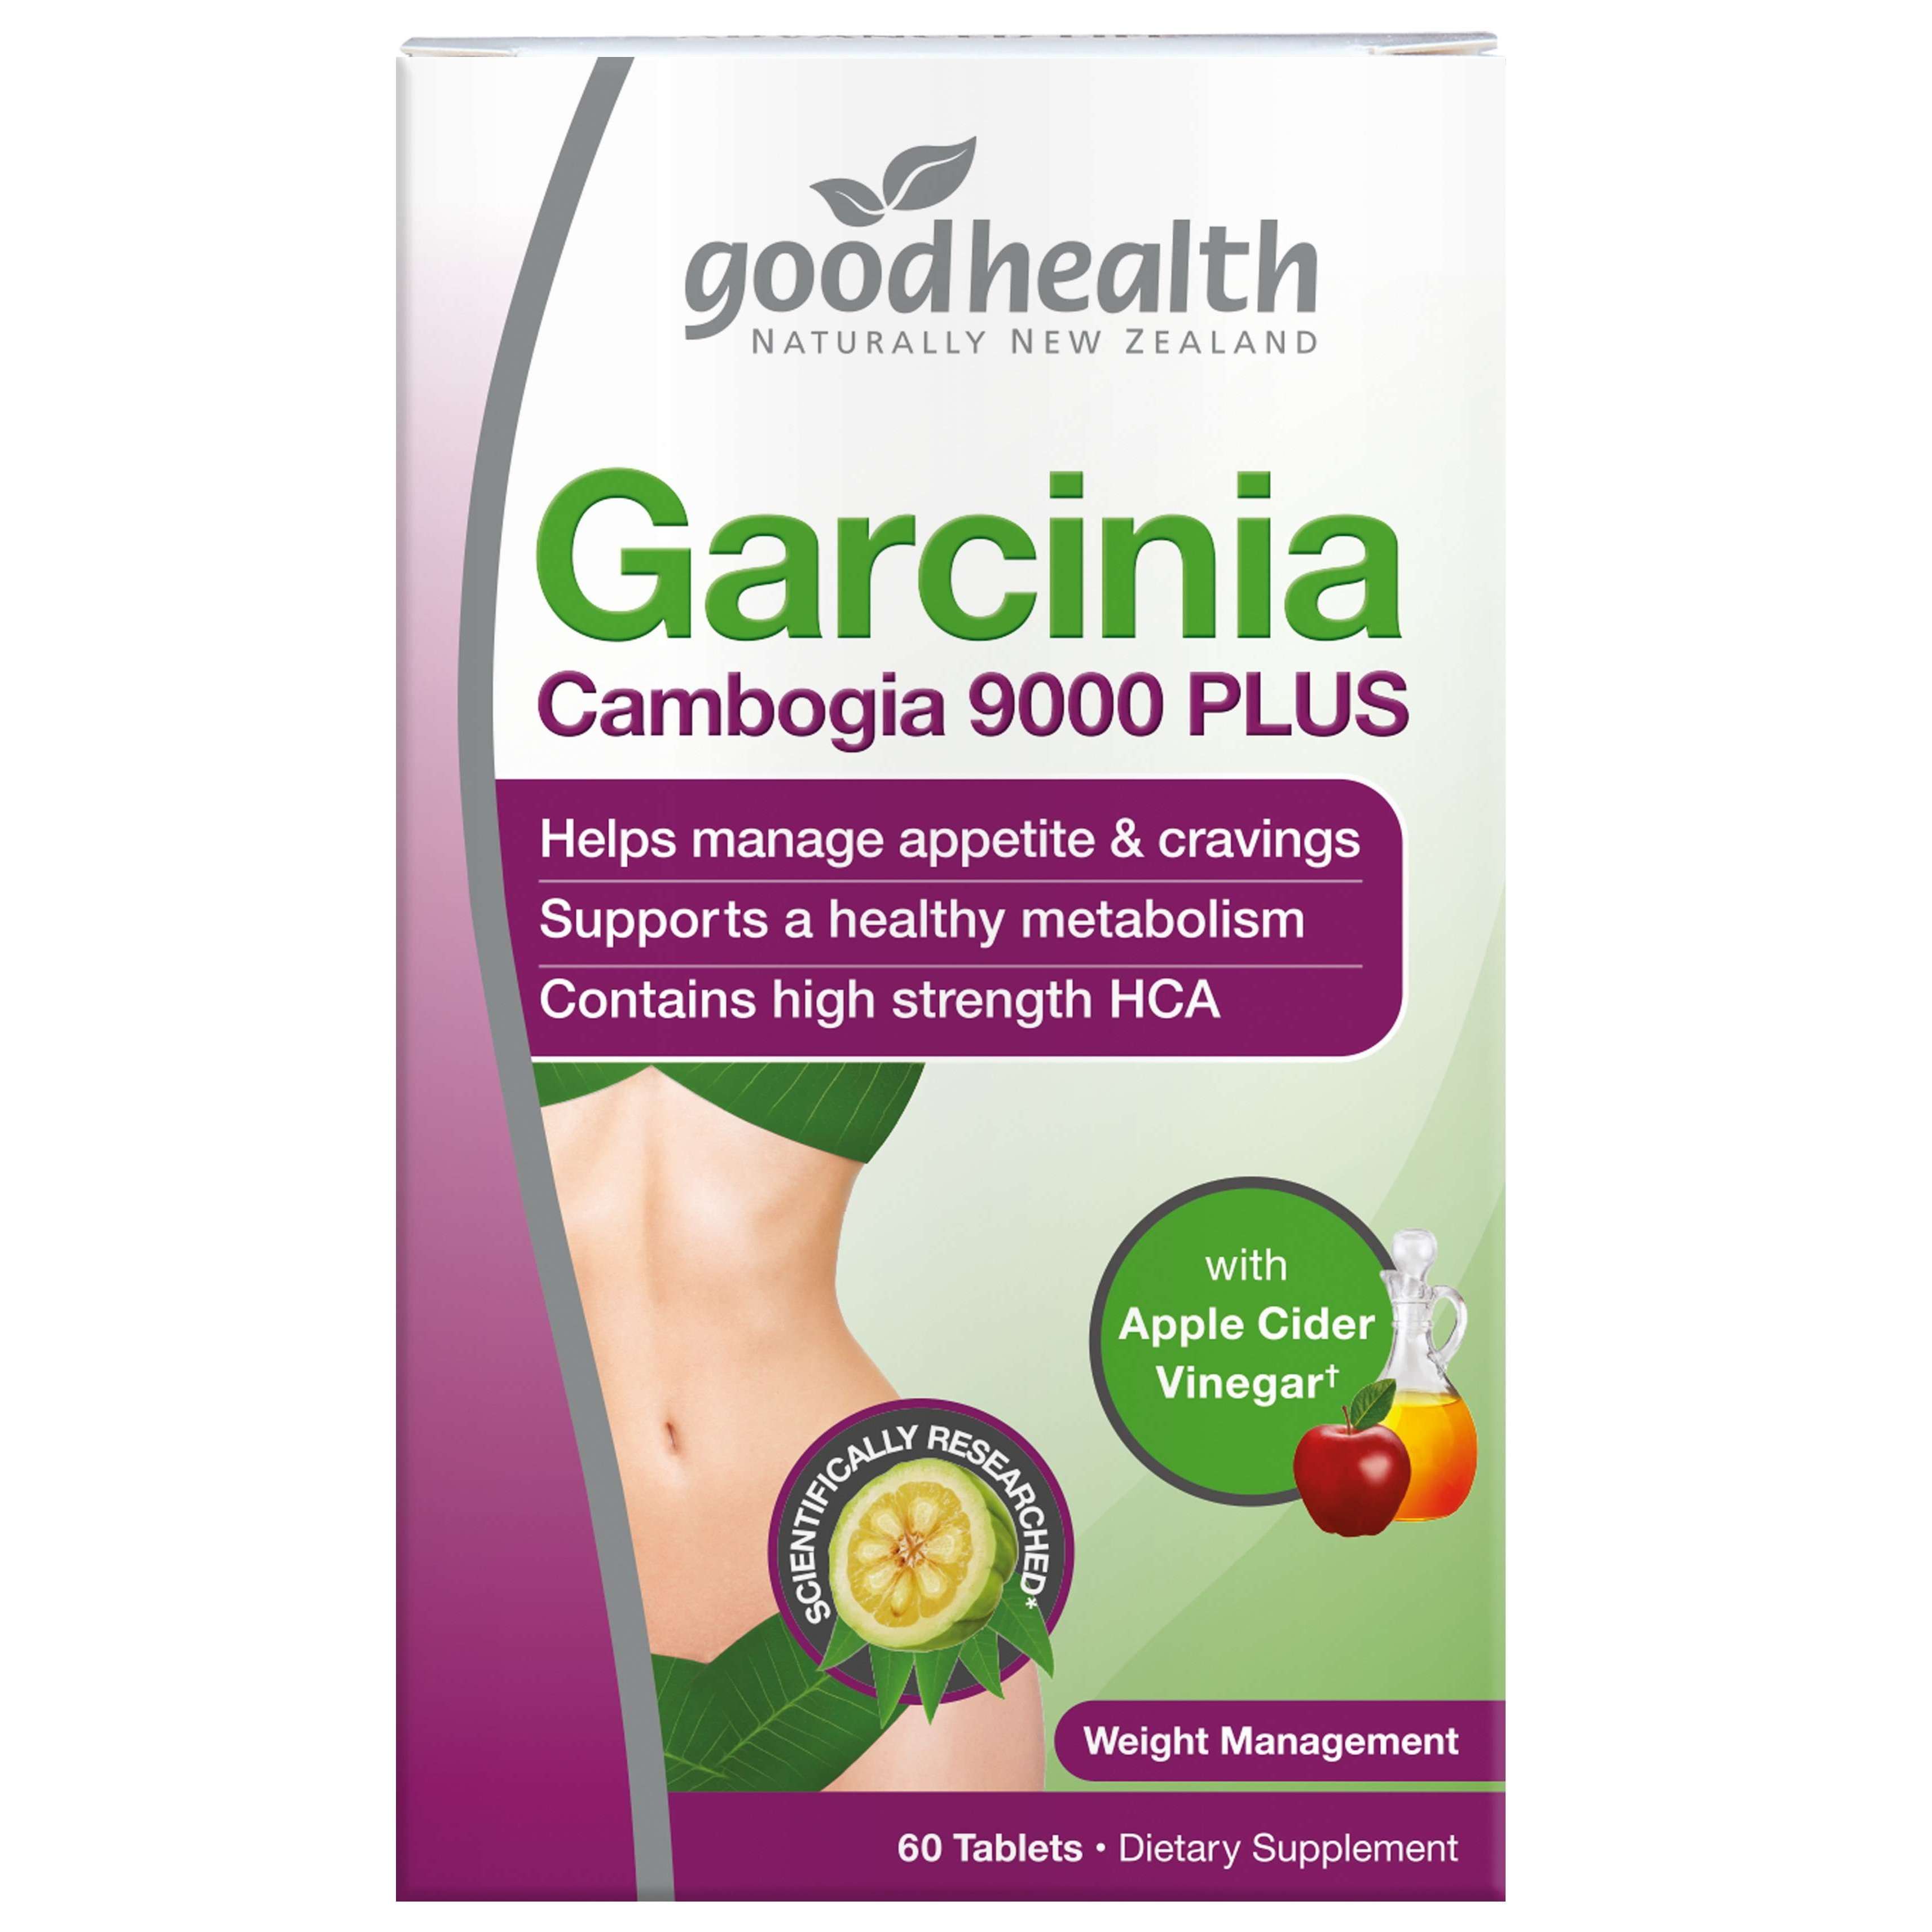 Good Health Garcinia Cambogia 9000 PLUS with Apple Cider Vinegar